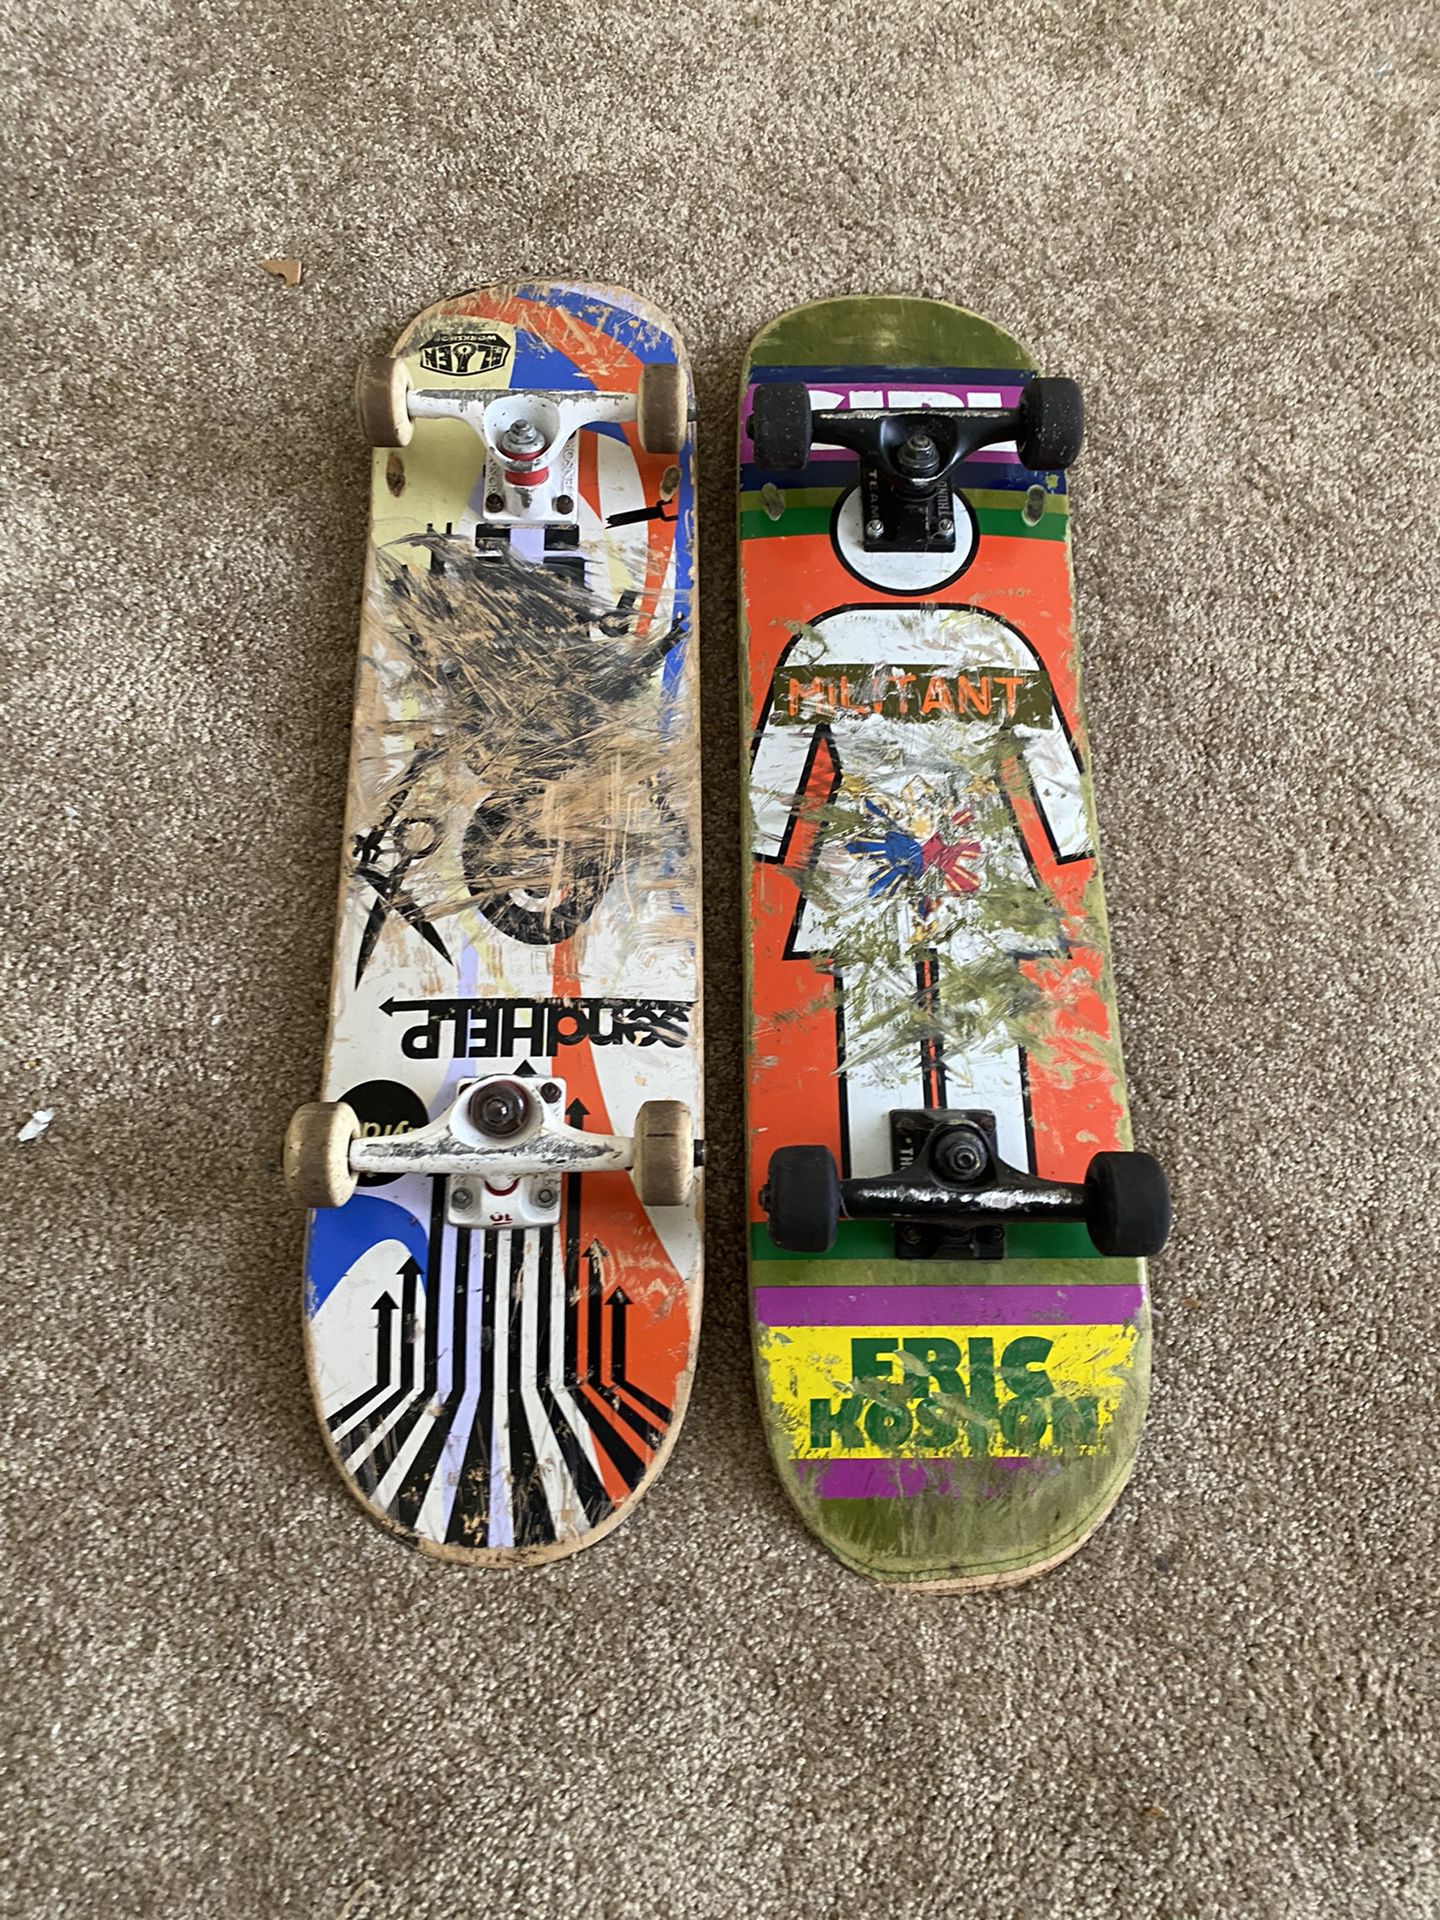 Pair of men’s skateboard decks alien workshop and girl